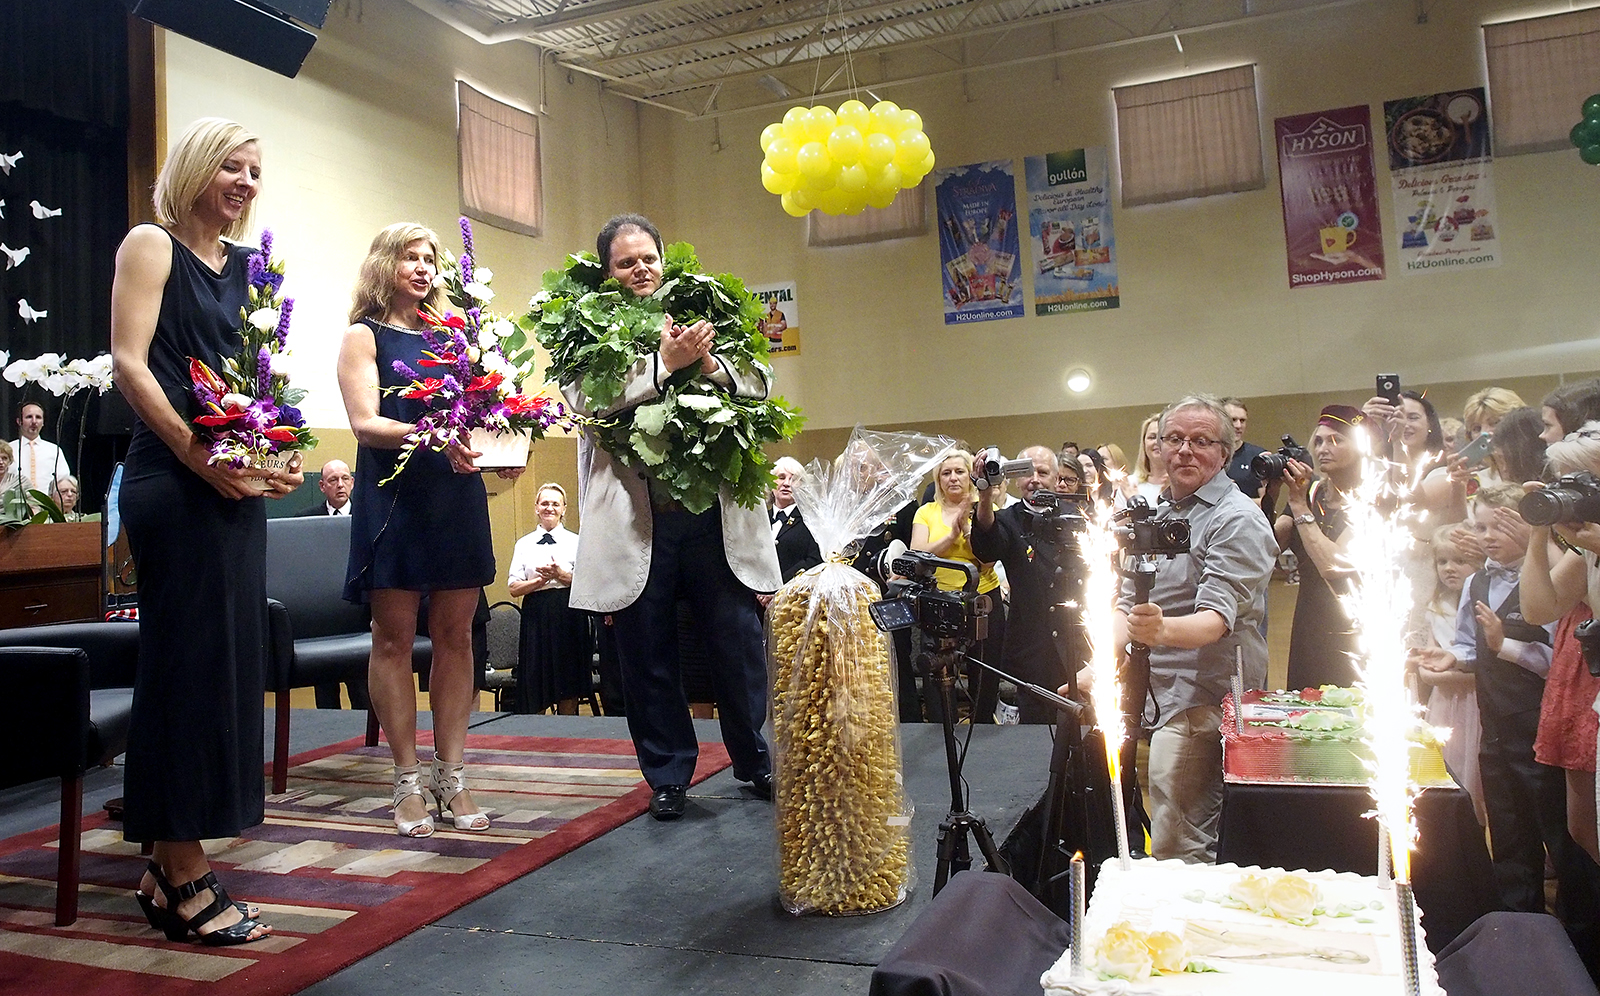 Atsisveikinimo žodžiai, gėlės ir įspūdingi tortai – išvykstantiems į Lietuvą (iš k.) Agnei Vertelkaitei, Gintarijai ir Marijui Gudynams.